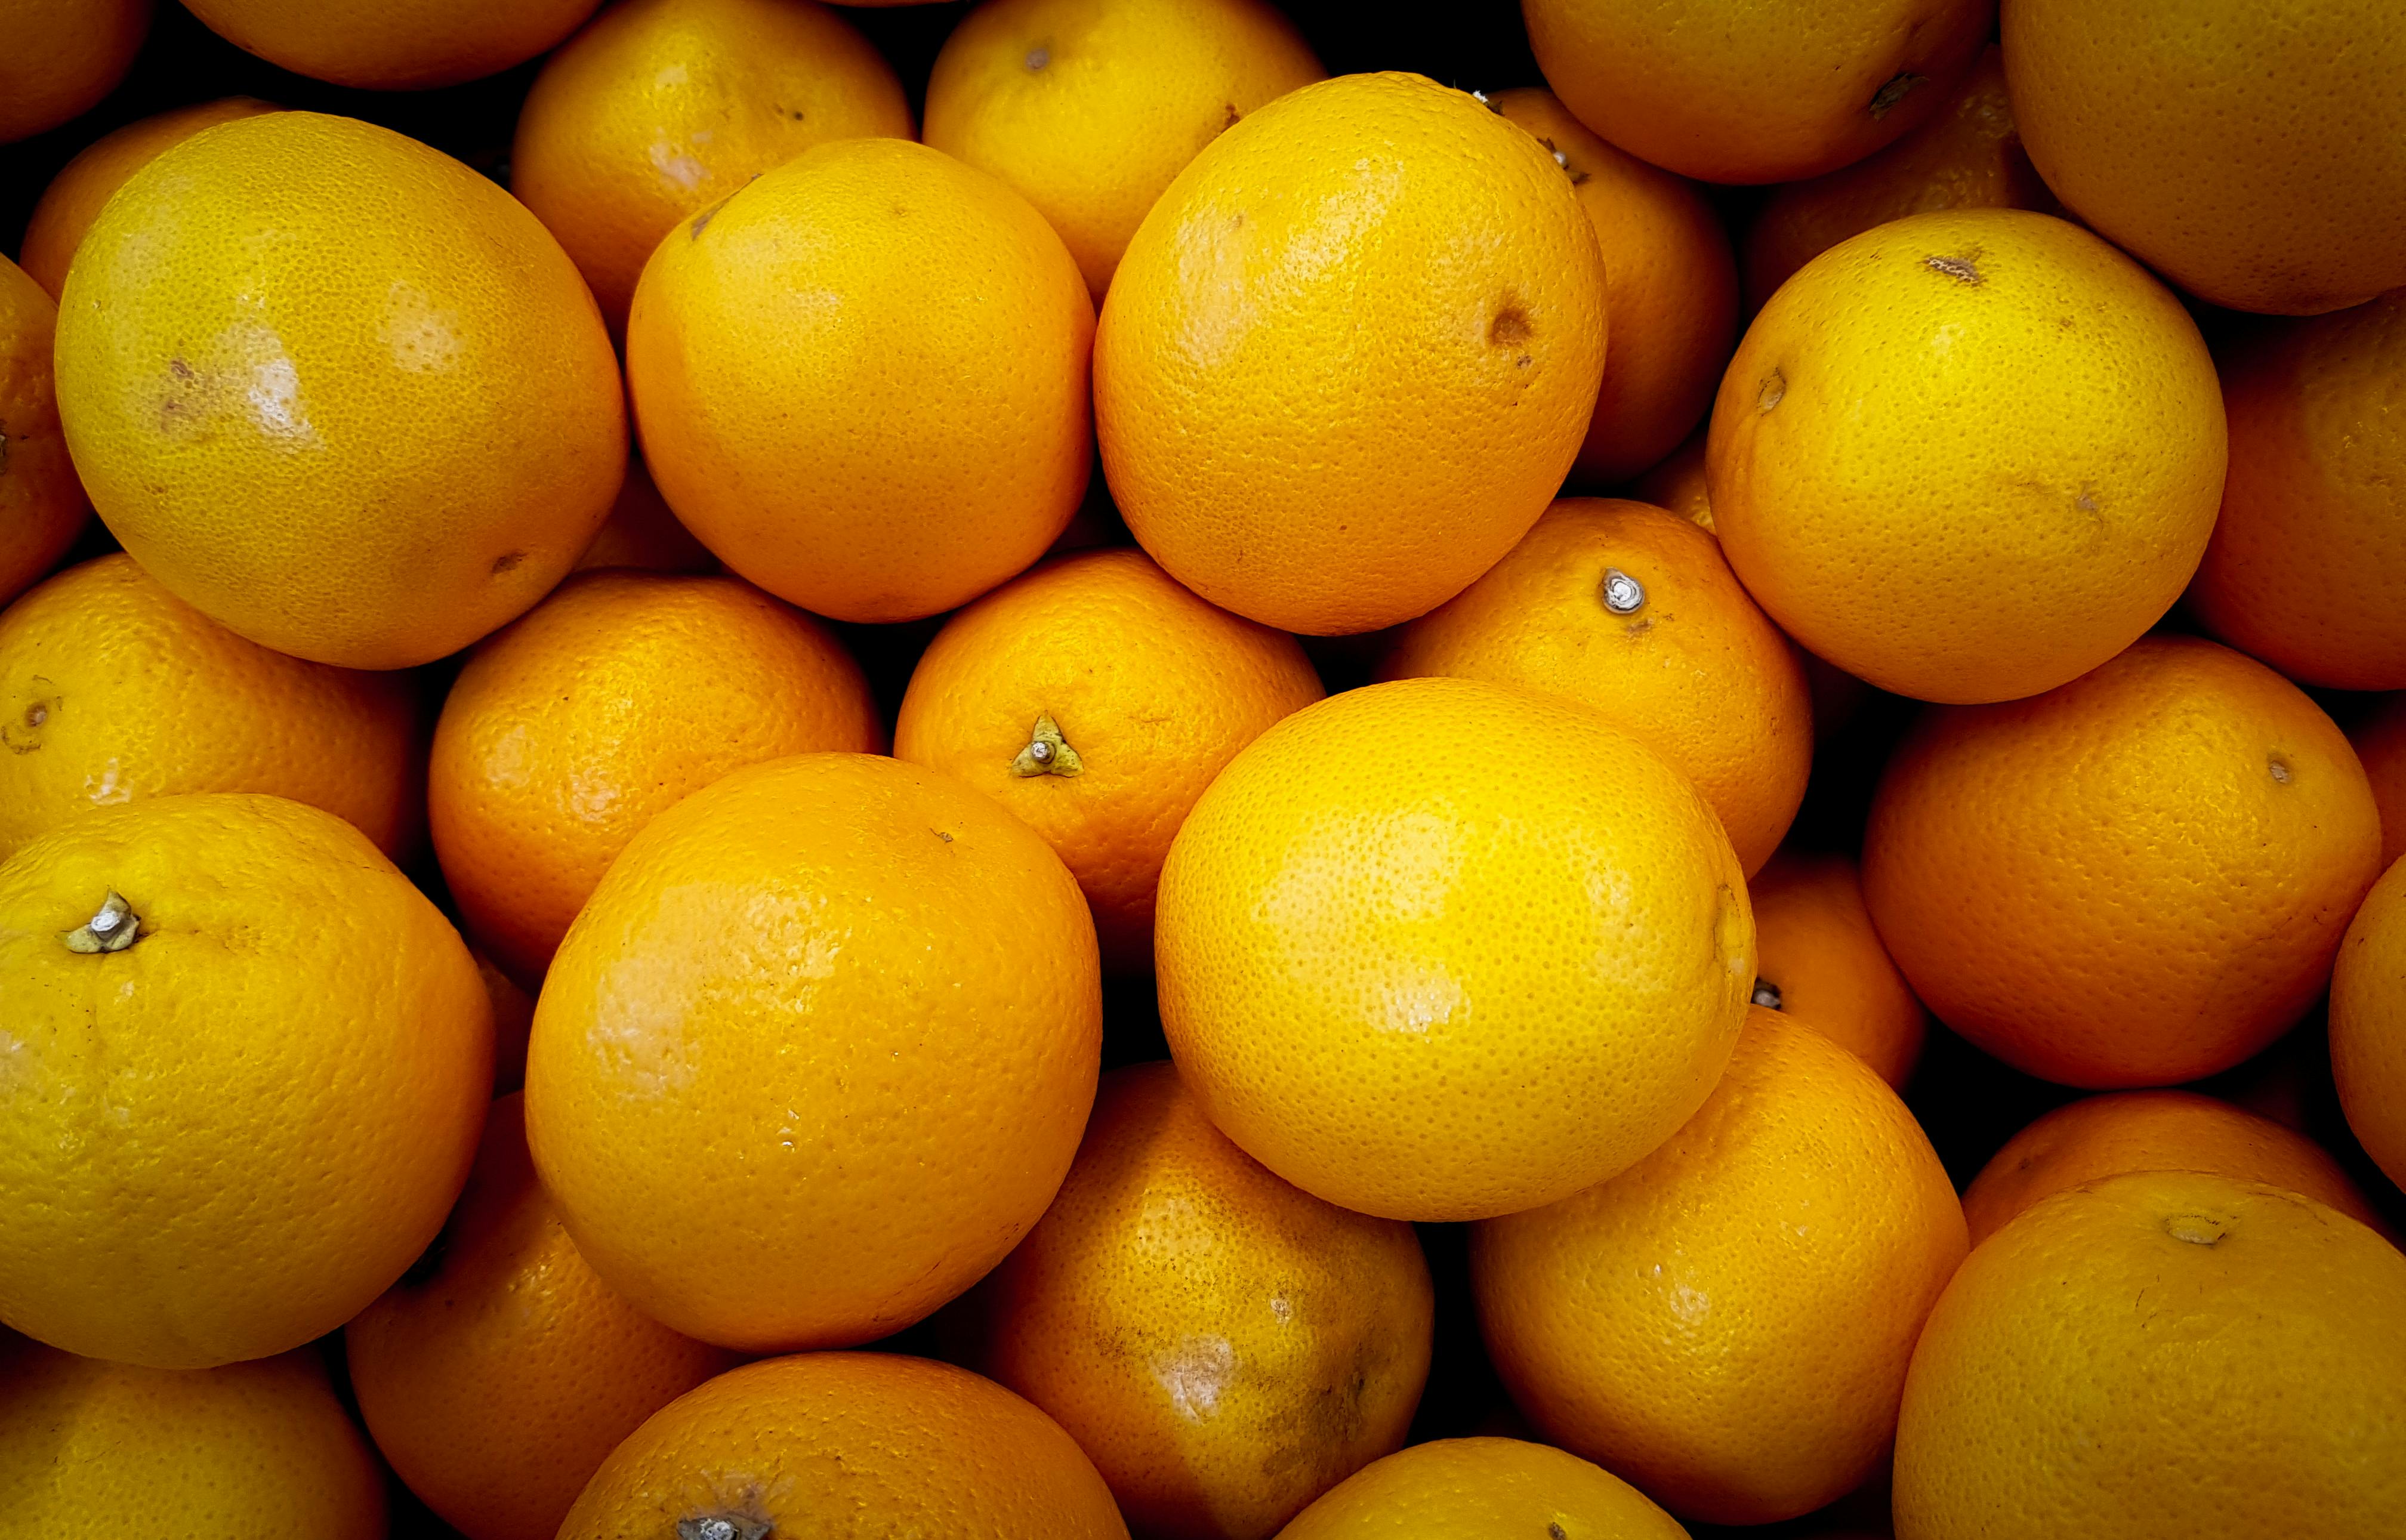  Orange  Fruits   Free Stock Photo